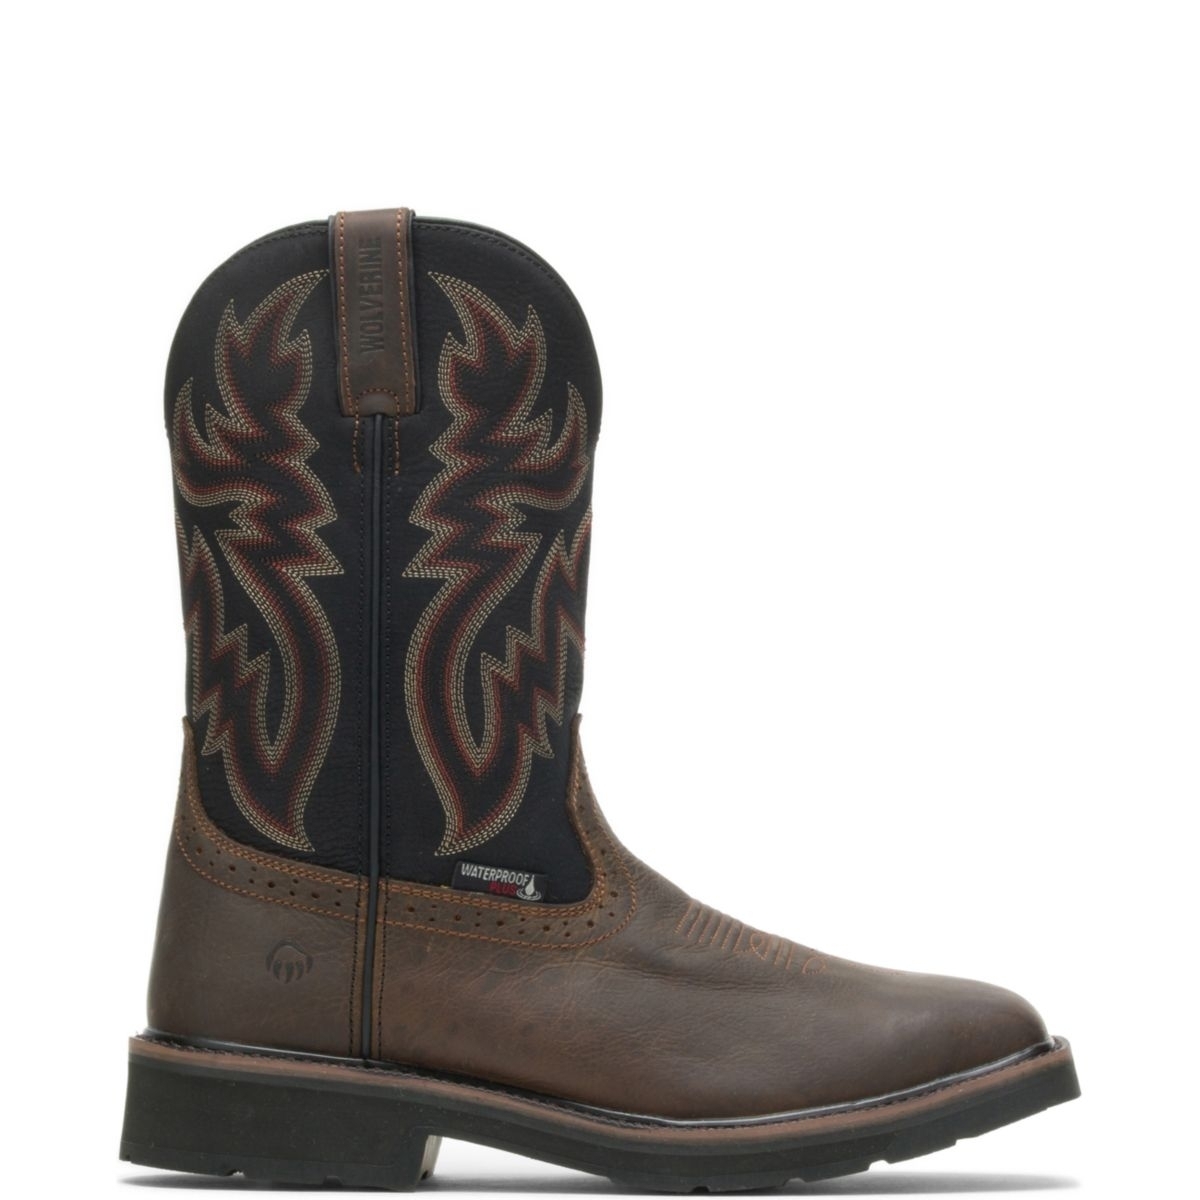 WOLVERINE Mens Rancher Waterproof Soft Toe Wellington Work Boot Black/Brown - W10768 varies BLACK/BROWN